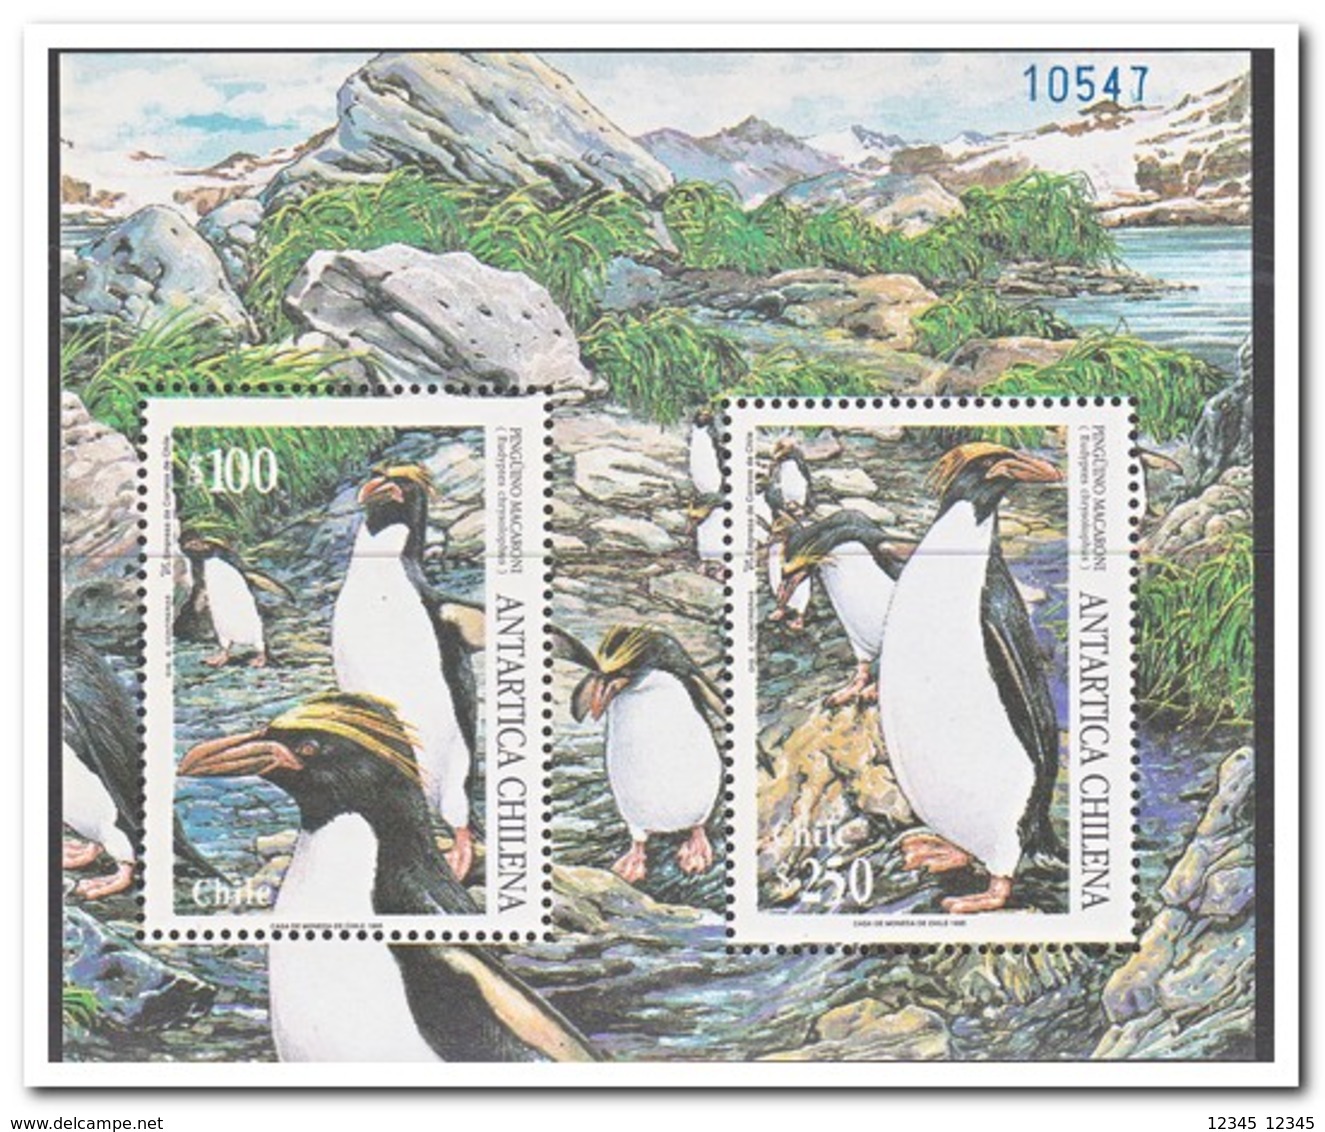 Chili 1995, Postfris MNH, Birds, Penguins - Chili